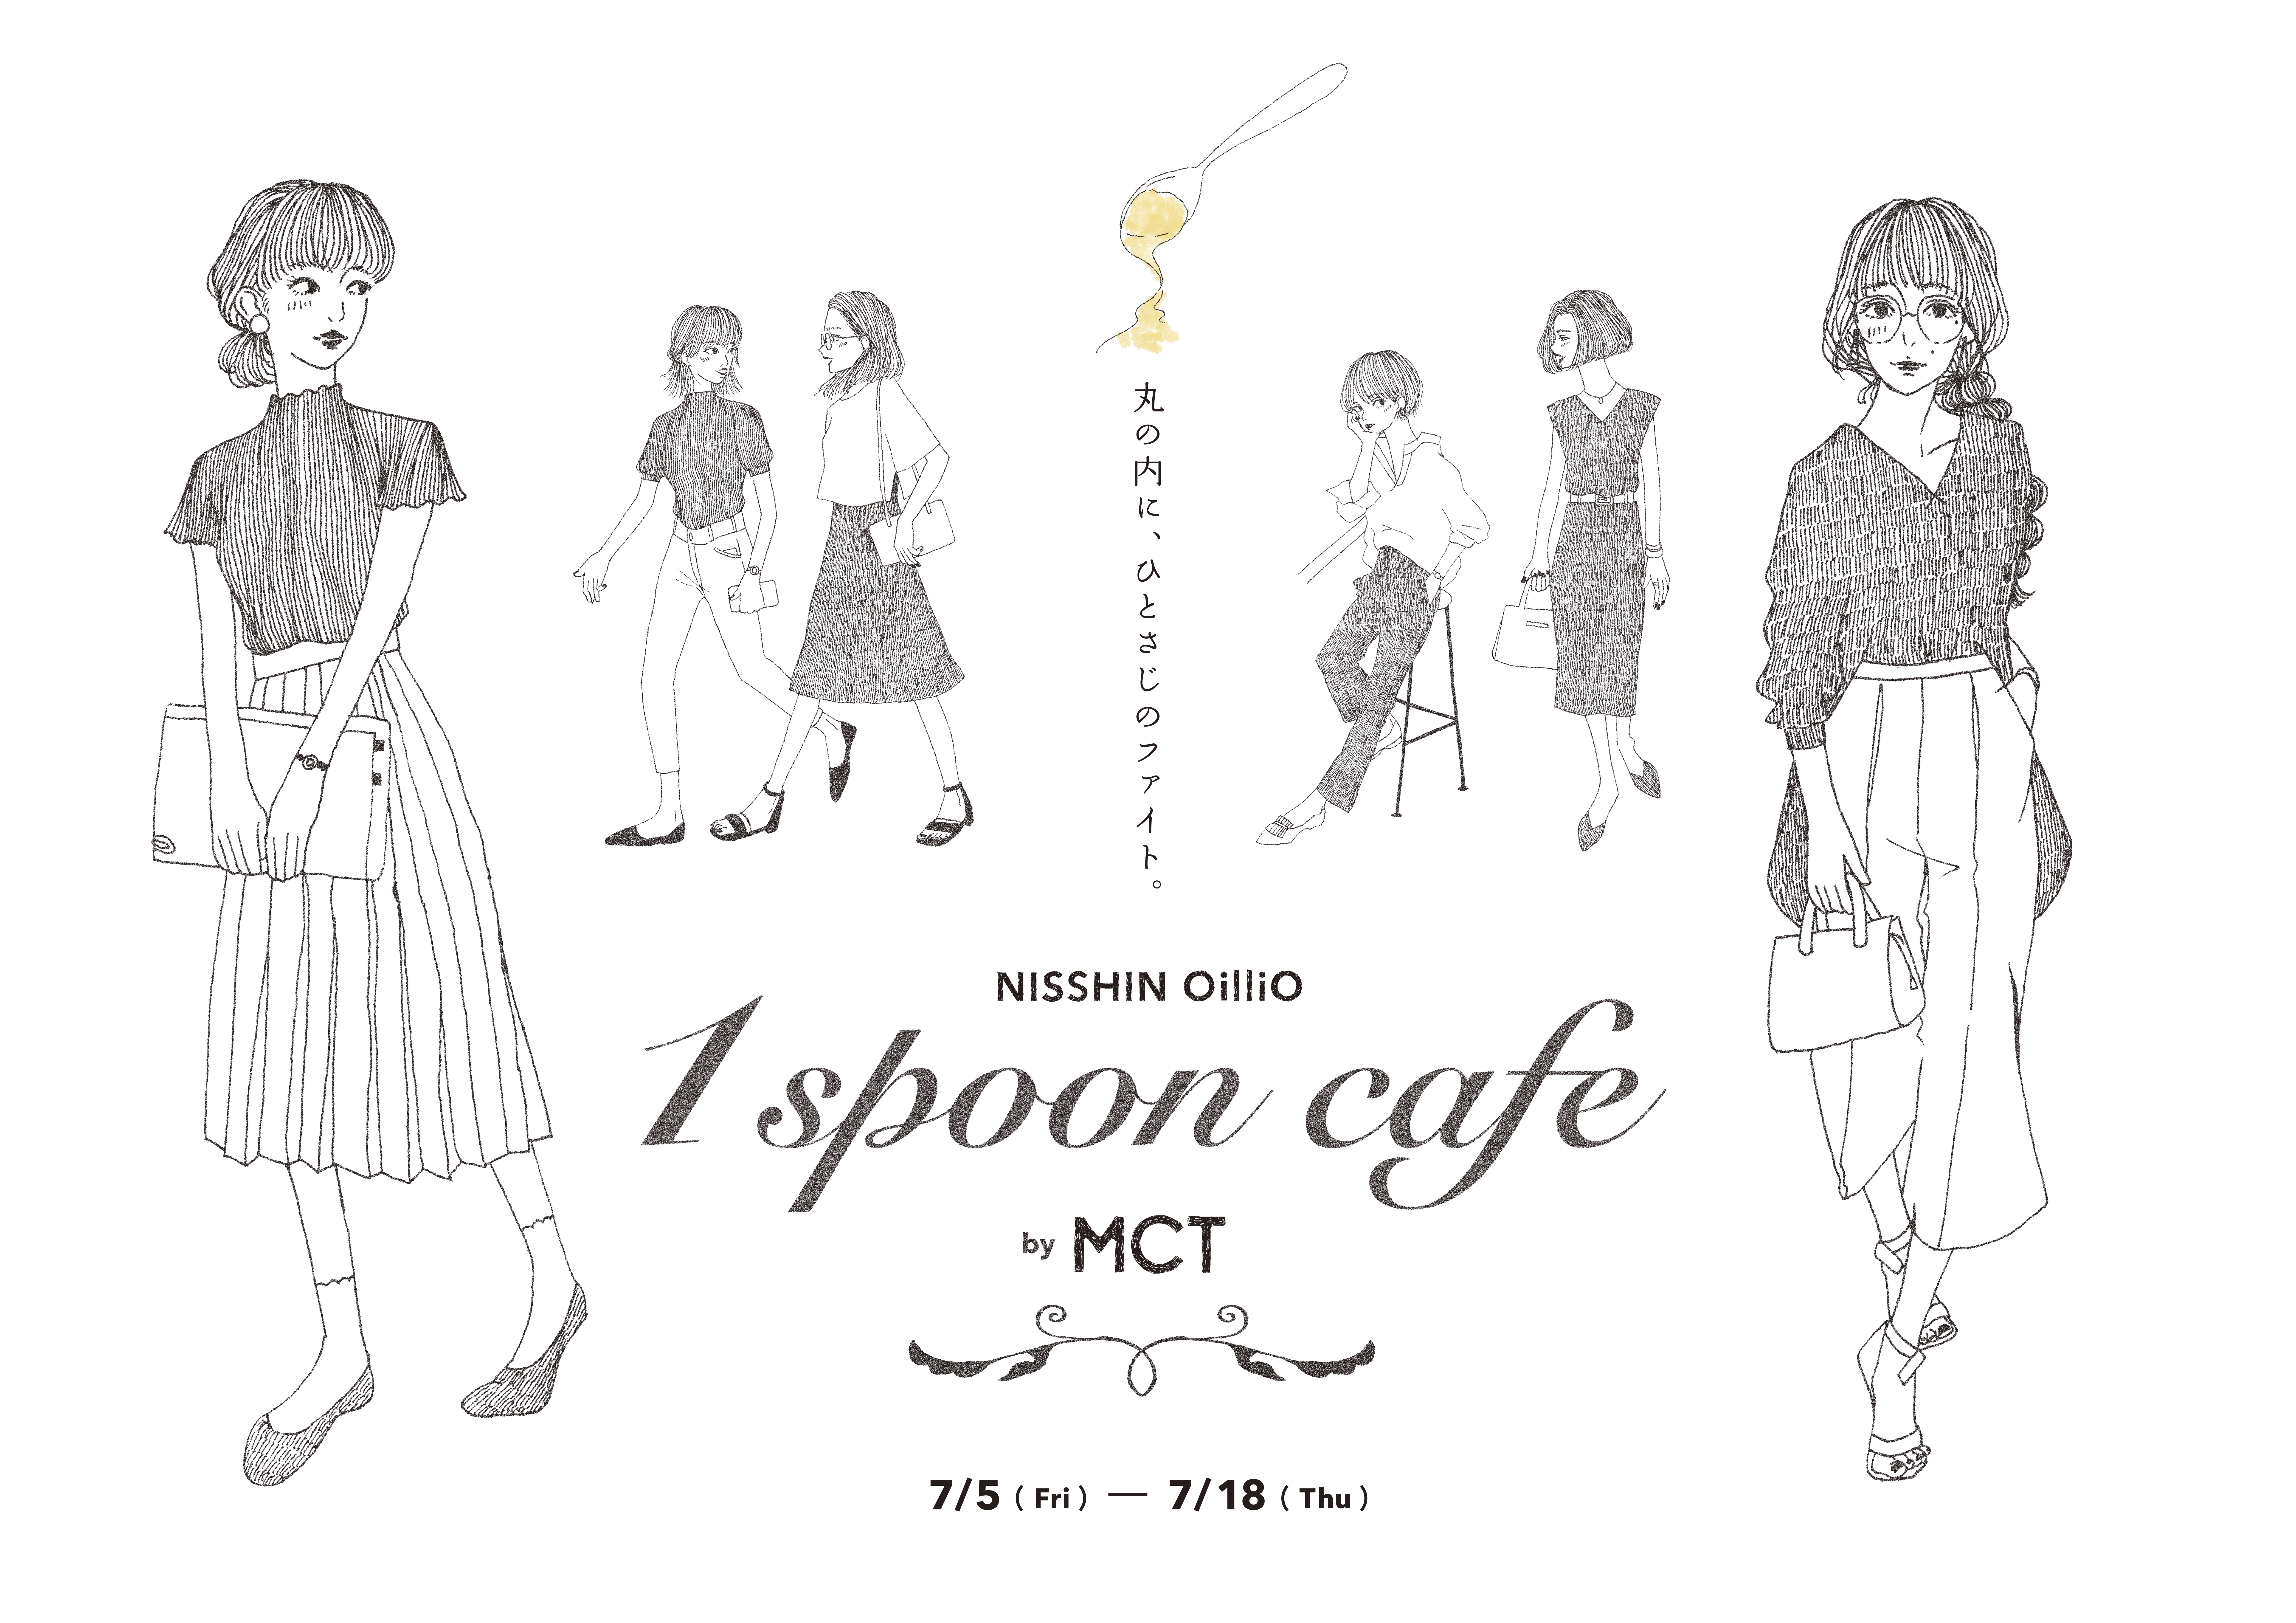 7月5日(金)-18日(木)開催 「1 spoon cafe by MCT 丸の内に、ひとさじのファイト。」